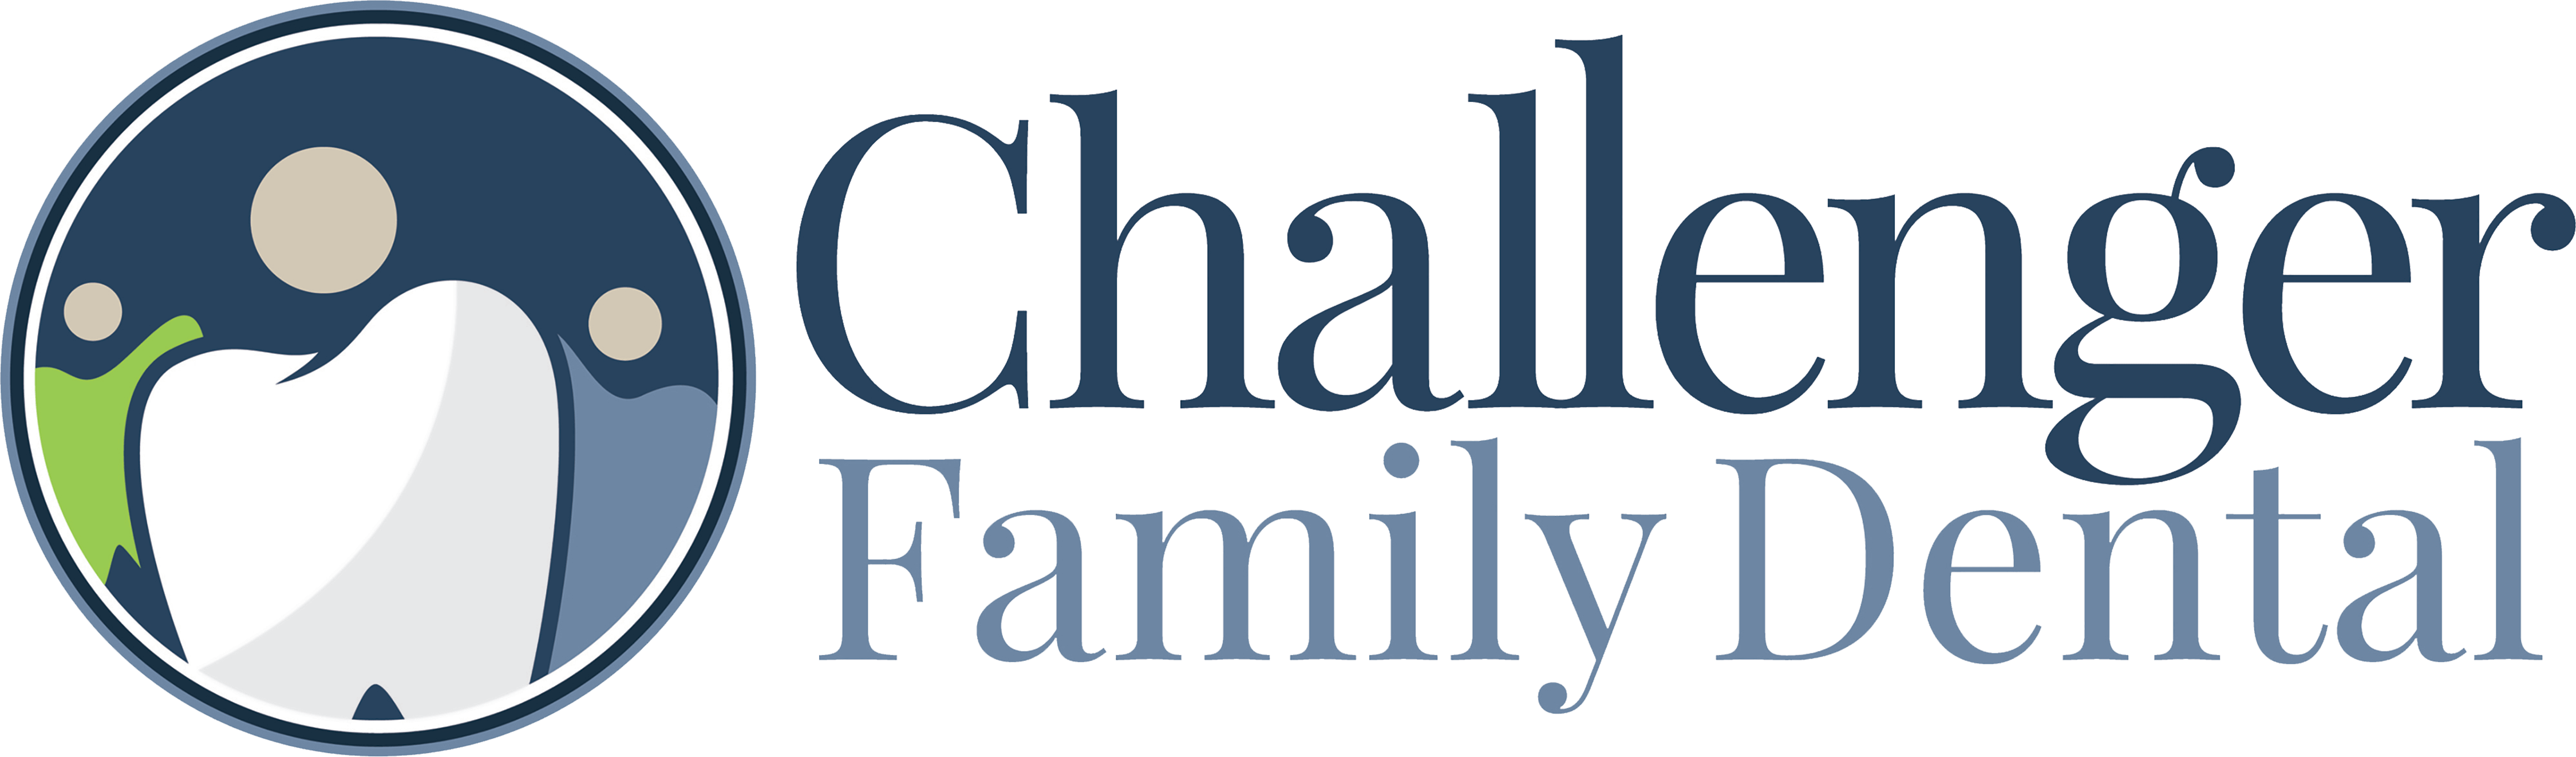 Challenger Family Dental